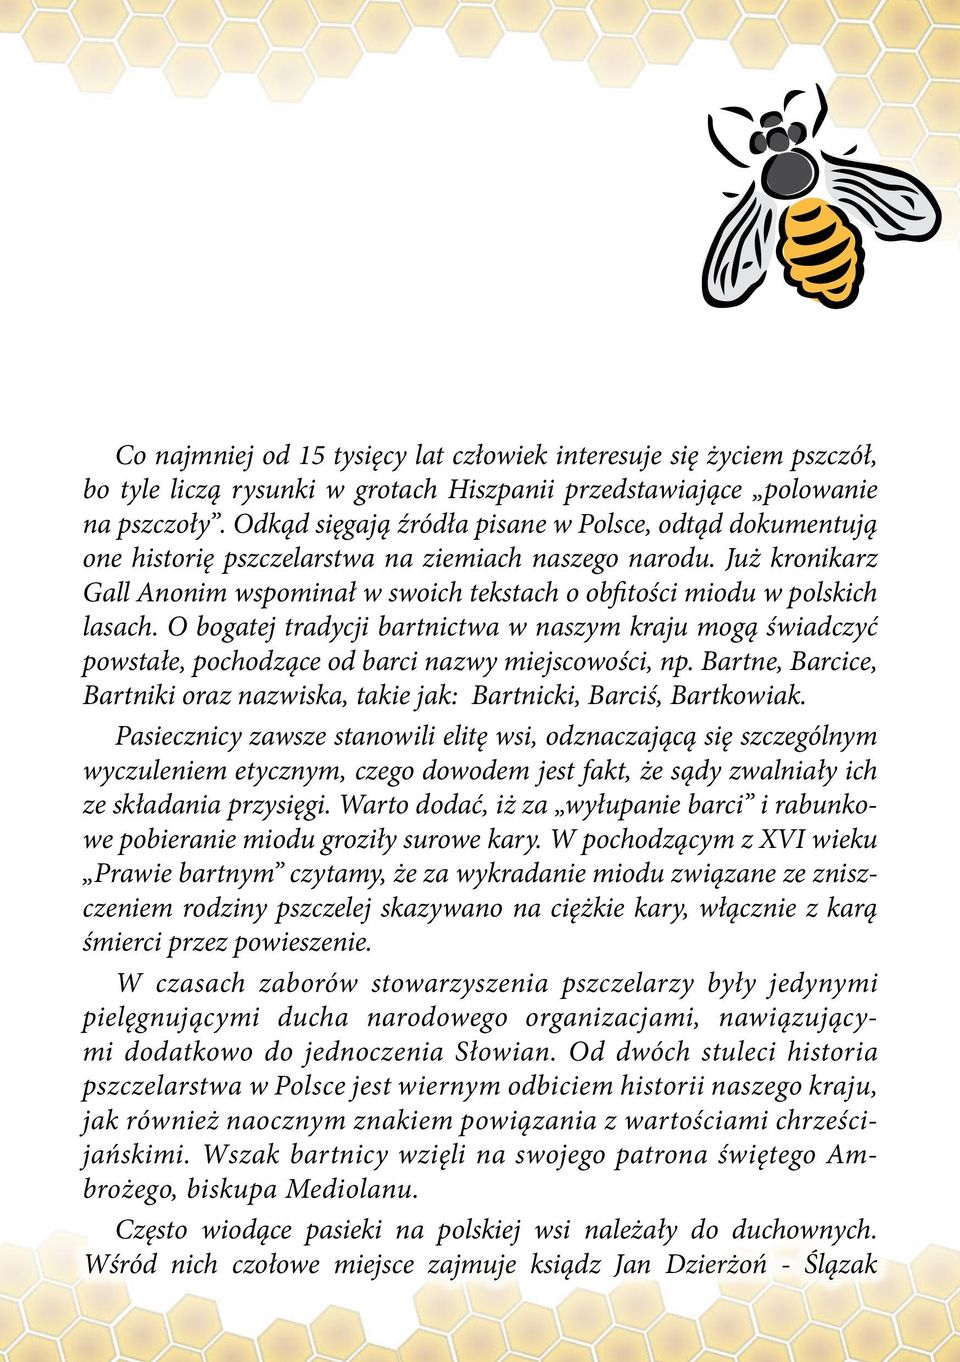 Już kronikarz Gall Anonim wspominał w swoich tekstach o obfitości miodu w polskich lasach.